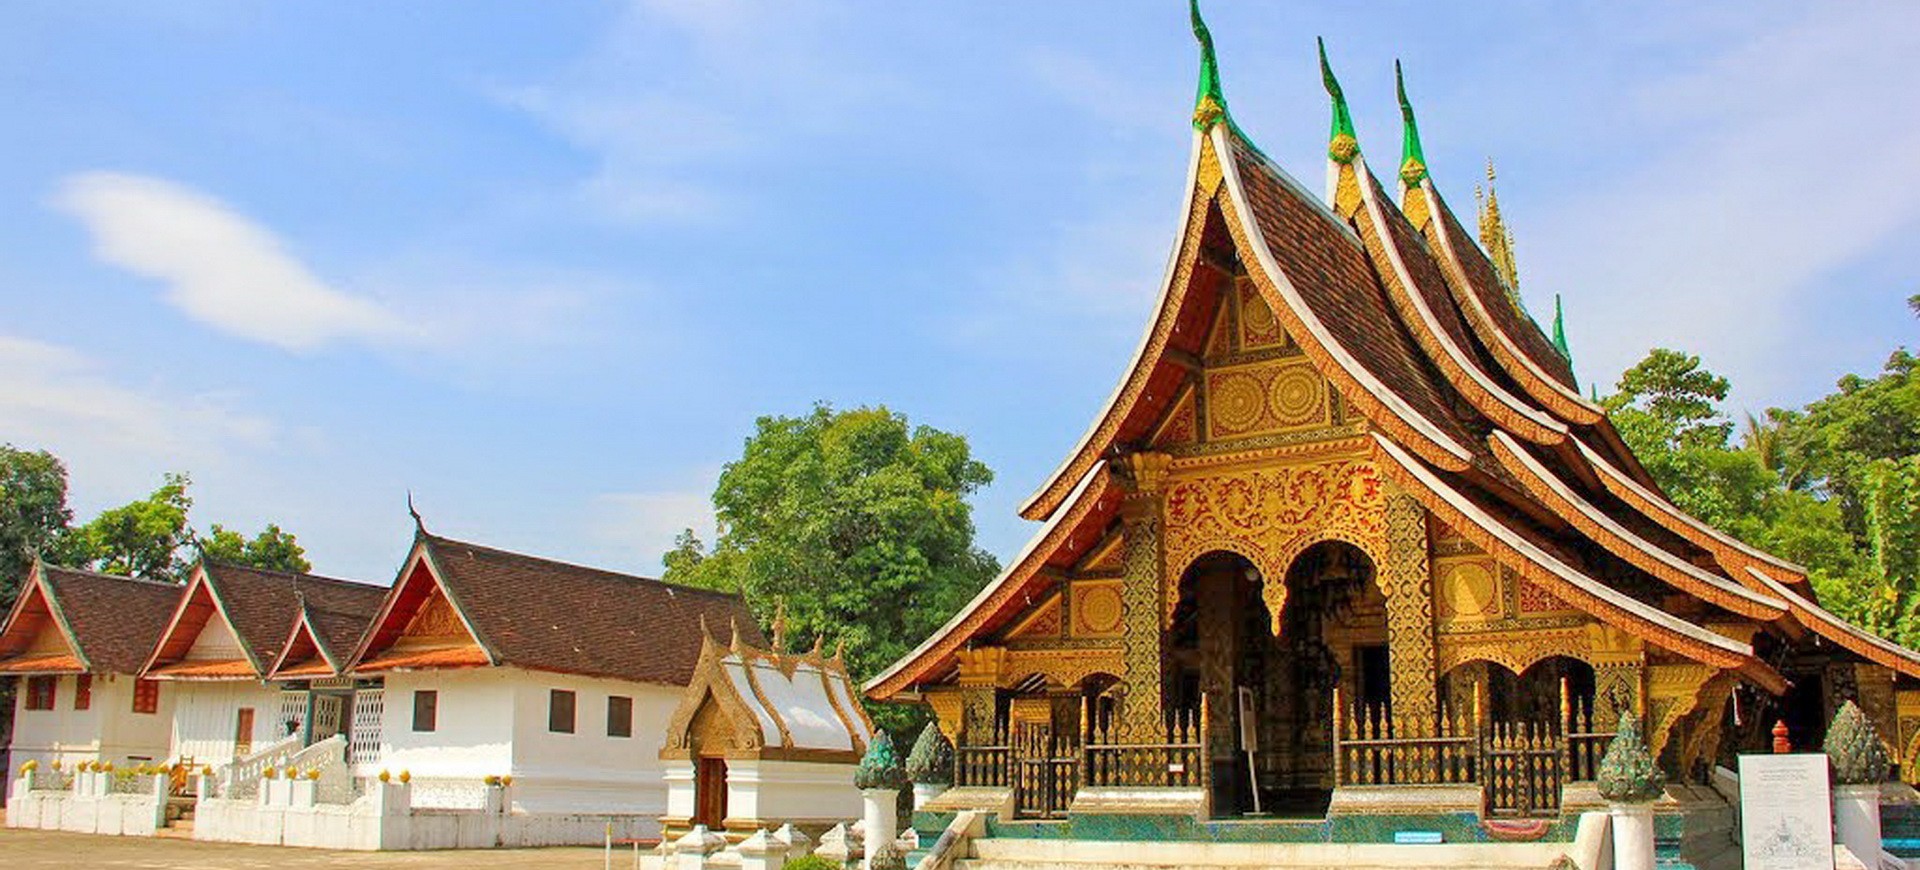 Laos Luang Prabang Vat Xieng Thong